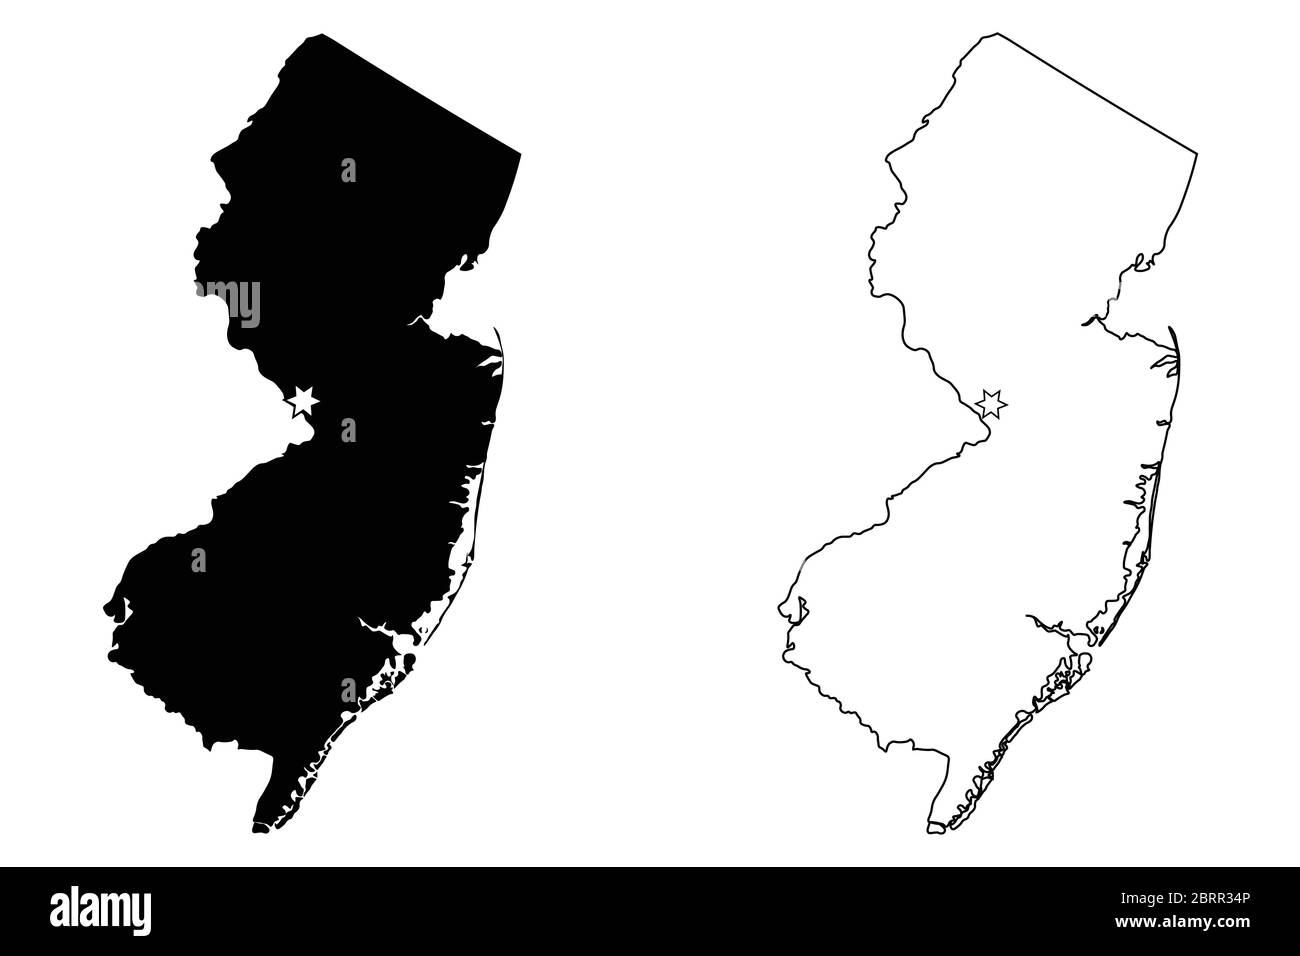 Mapa del estado de Nueva Jersey NJ USA con Capital City Star en Trenton. Silueta y contorno negros aislados sobre fondo blanco. Vector EPS Ilustración del Vector